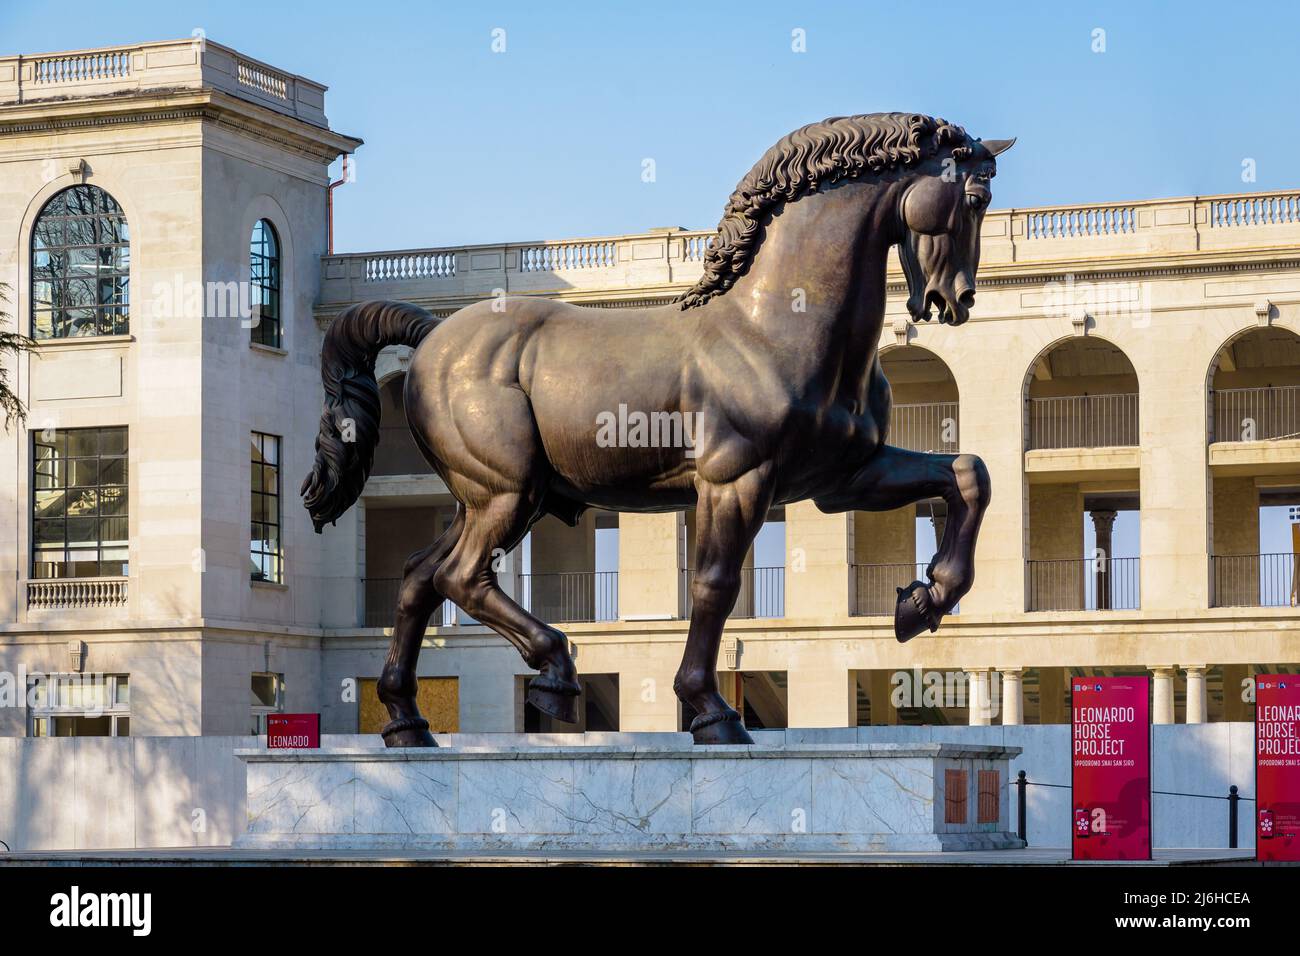 Le cheval de Léonard de Vinci (Cavallo di Leonardo) est une statue moderne en bronze, exposée à Milan, en Italie. Banque D'Images